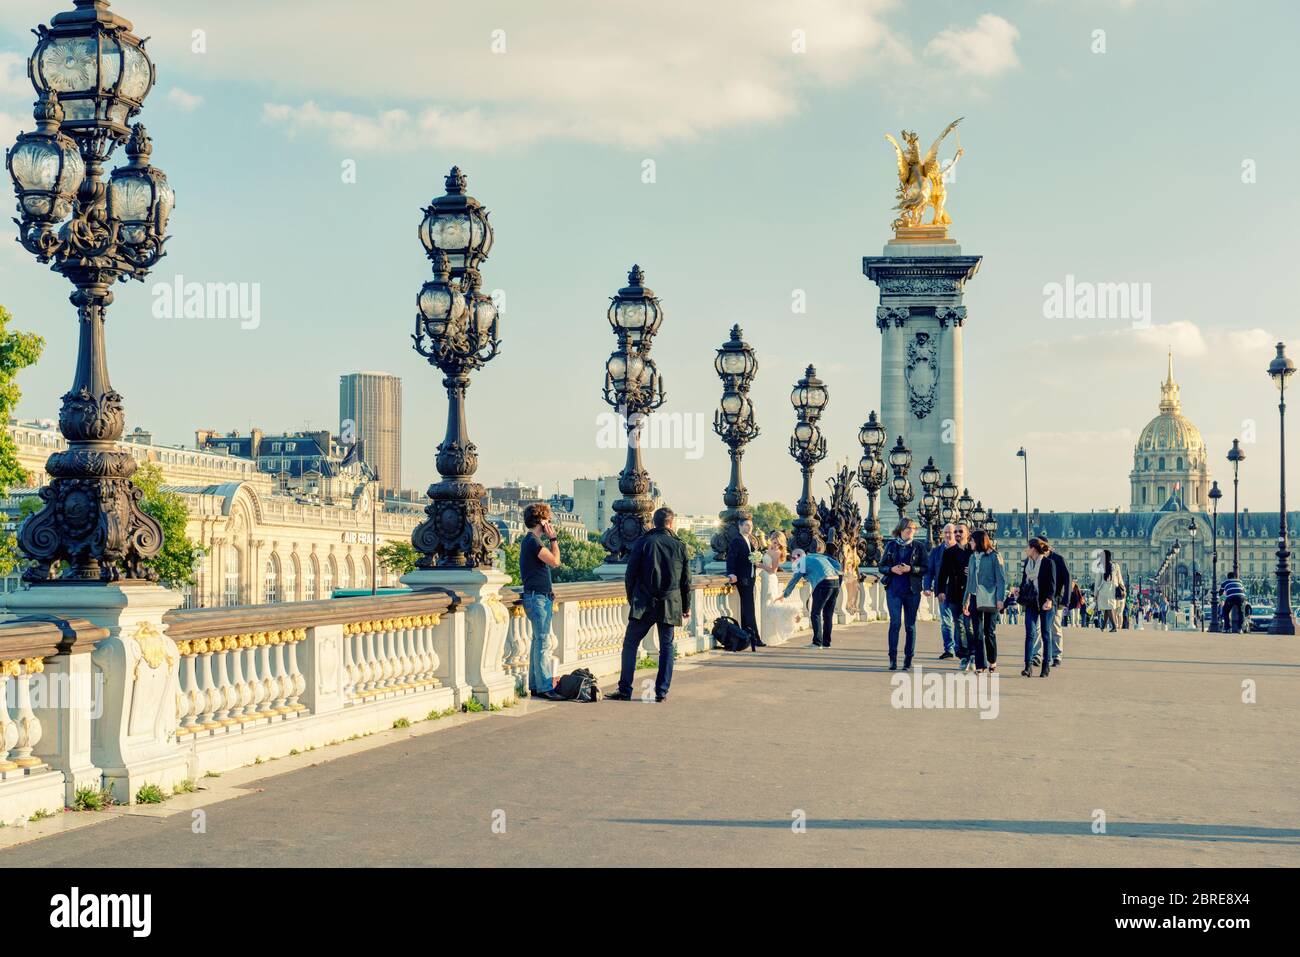 PARÍS - 20 DE SEPTIEMBRE de 2013: Vista del puente Alexandre III en París. El puente Alexandre III es uno de los principales destinos turísticos de París. Foto de stock